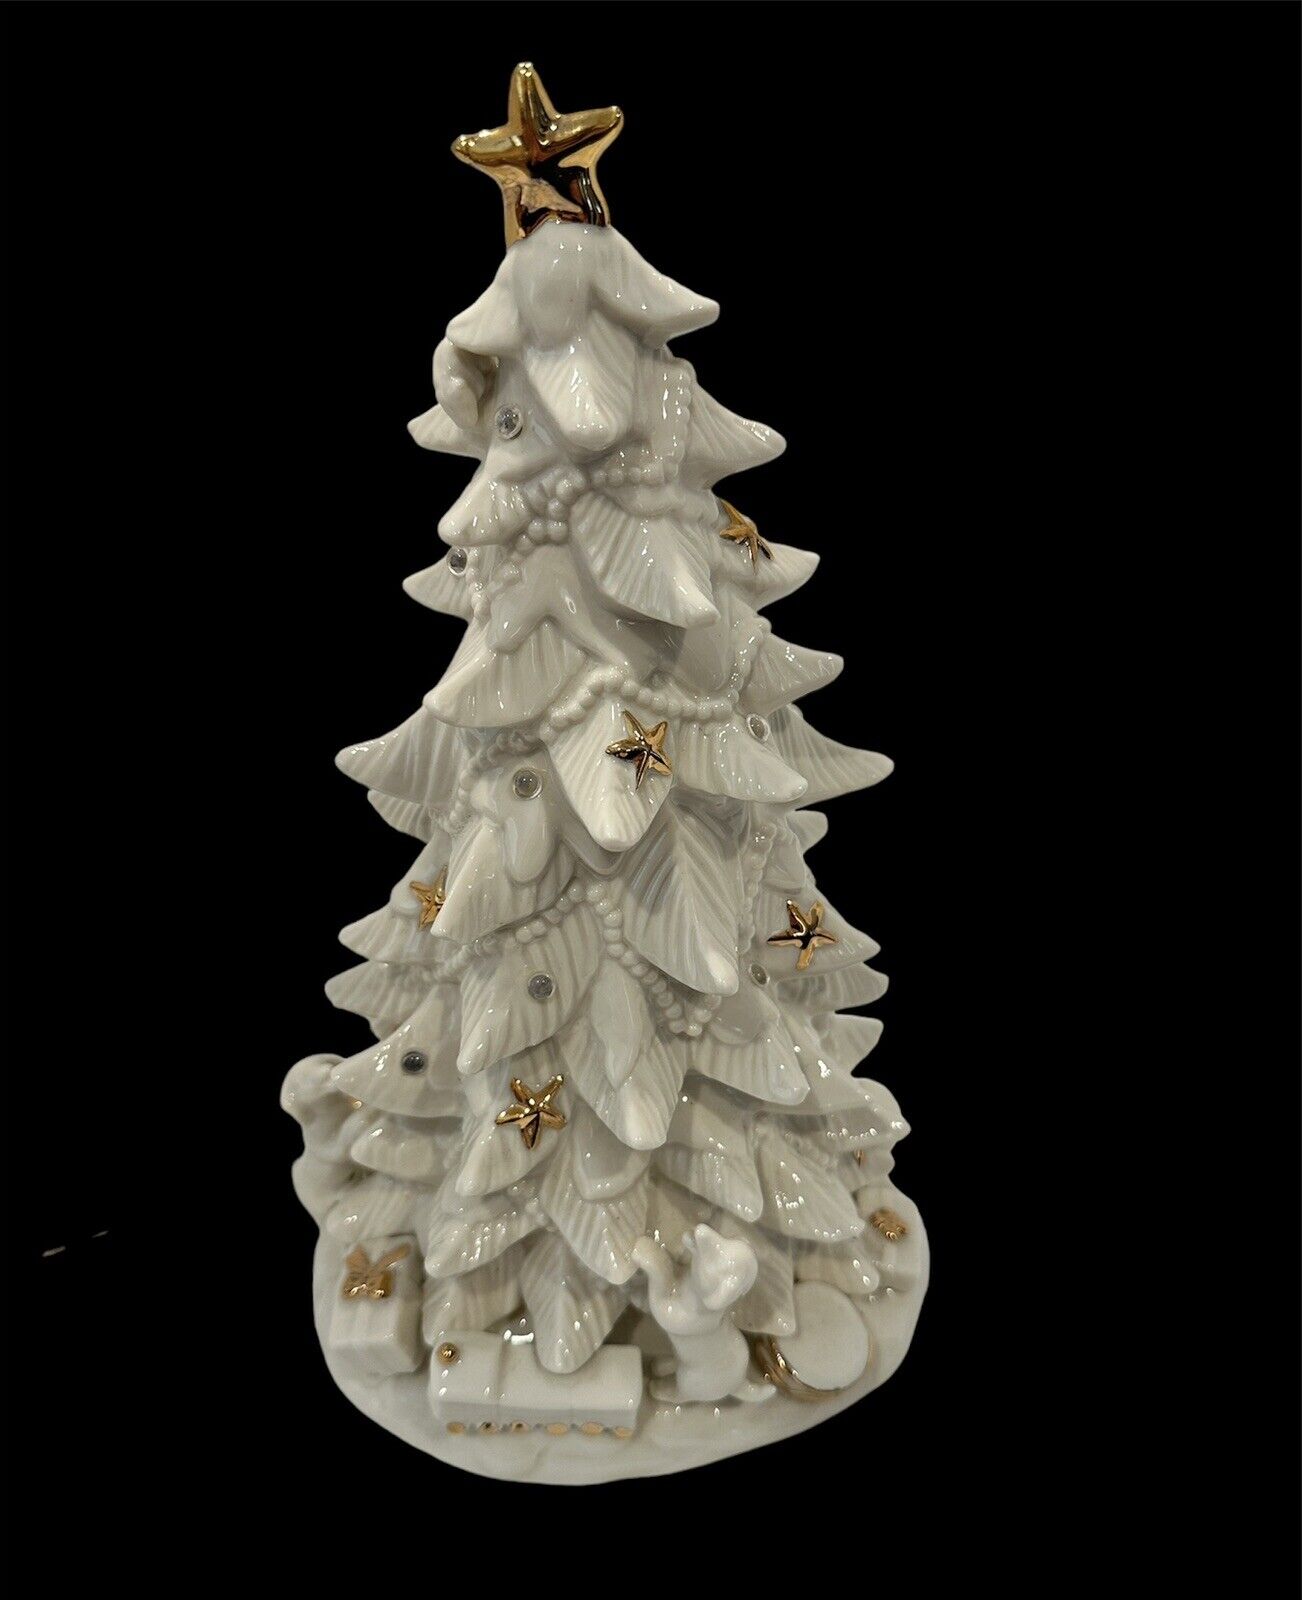 Grandeur Noel White Porcelain Christmas Tree Only Lights Up 2000 EUC Retired